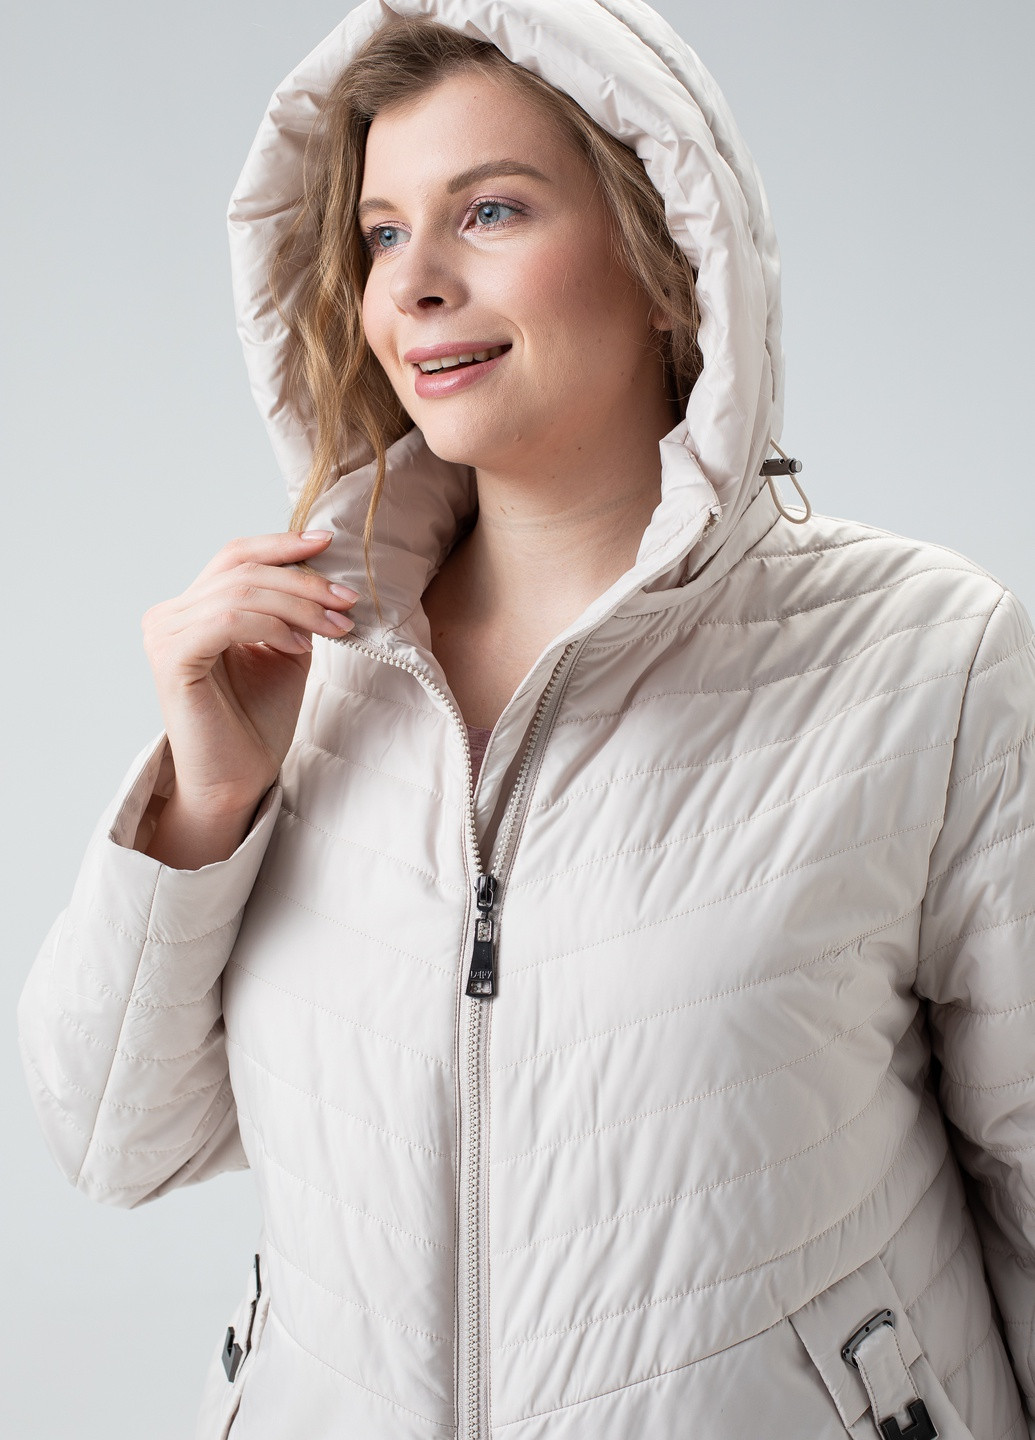 Бежевая демисезонная женская демисезонная куртка большие размеры delfi бежевая 910622 Delfy